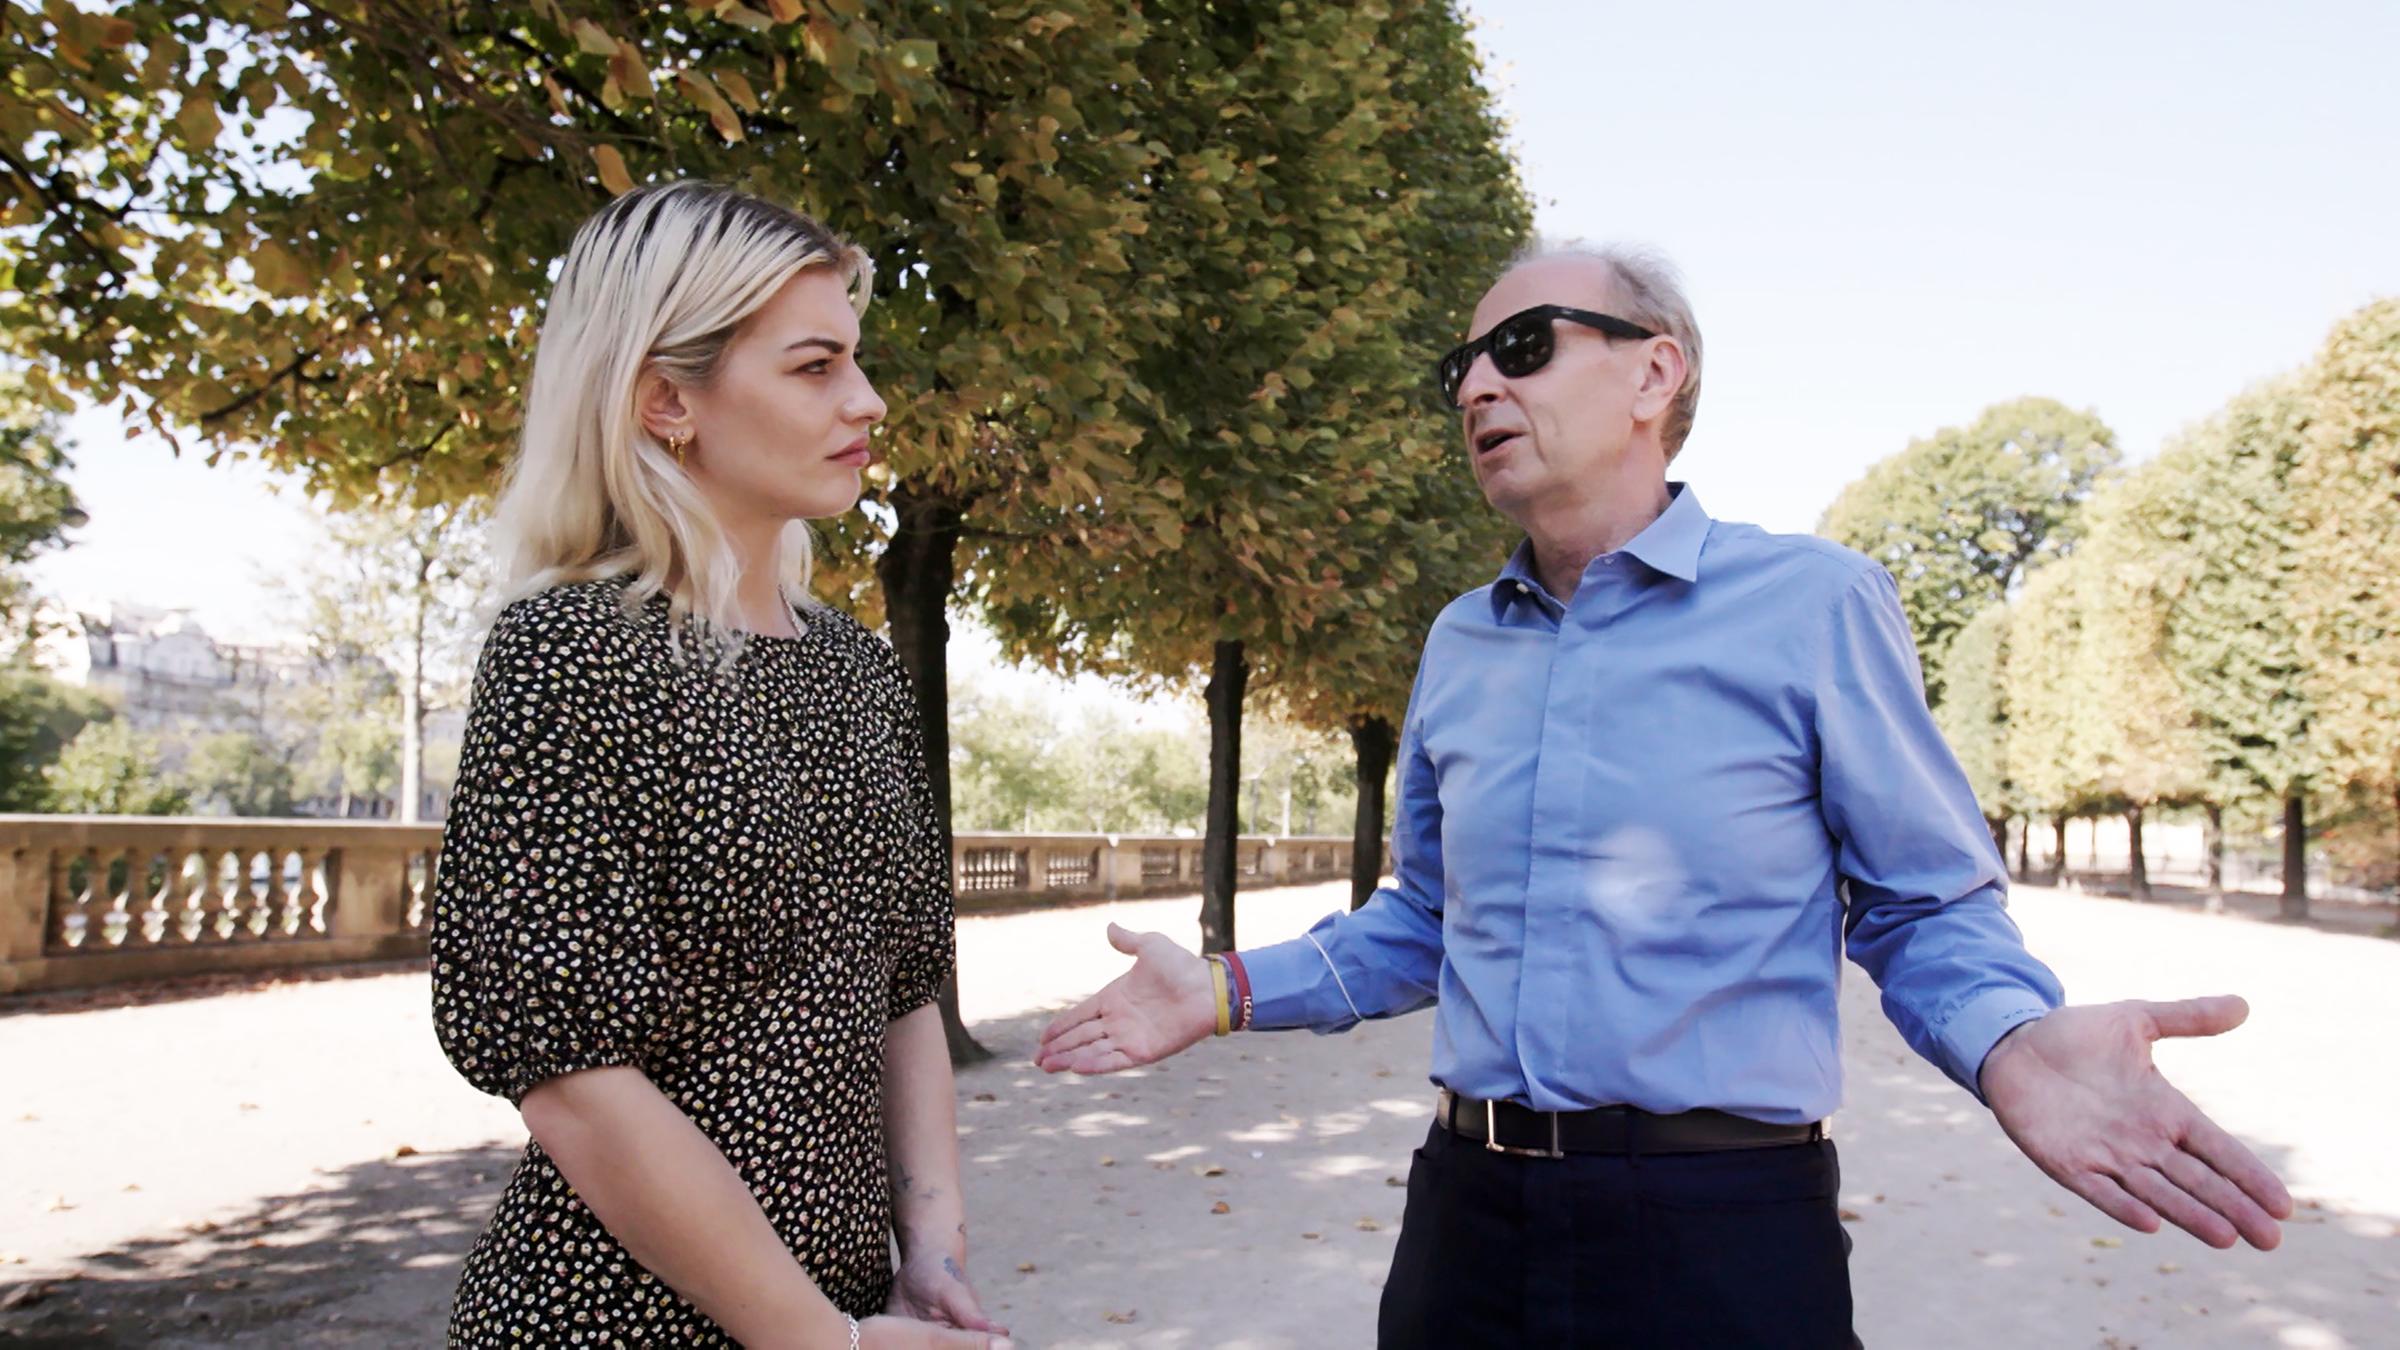 Yves Bouvier und Reporterin Sydney Lima stehen auf einer Allee in einem Park. Beide unterhalten sich, der Mann hält beide Handflächen nach oben.